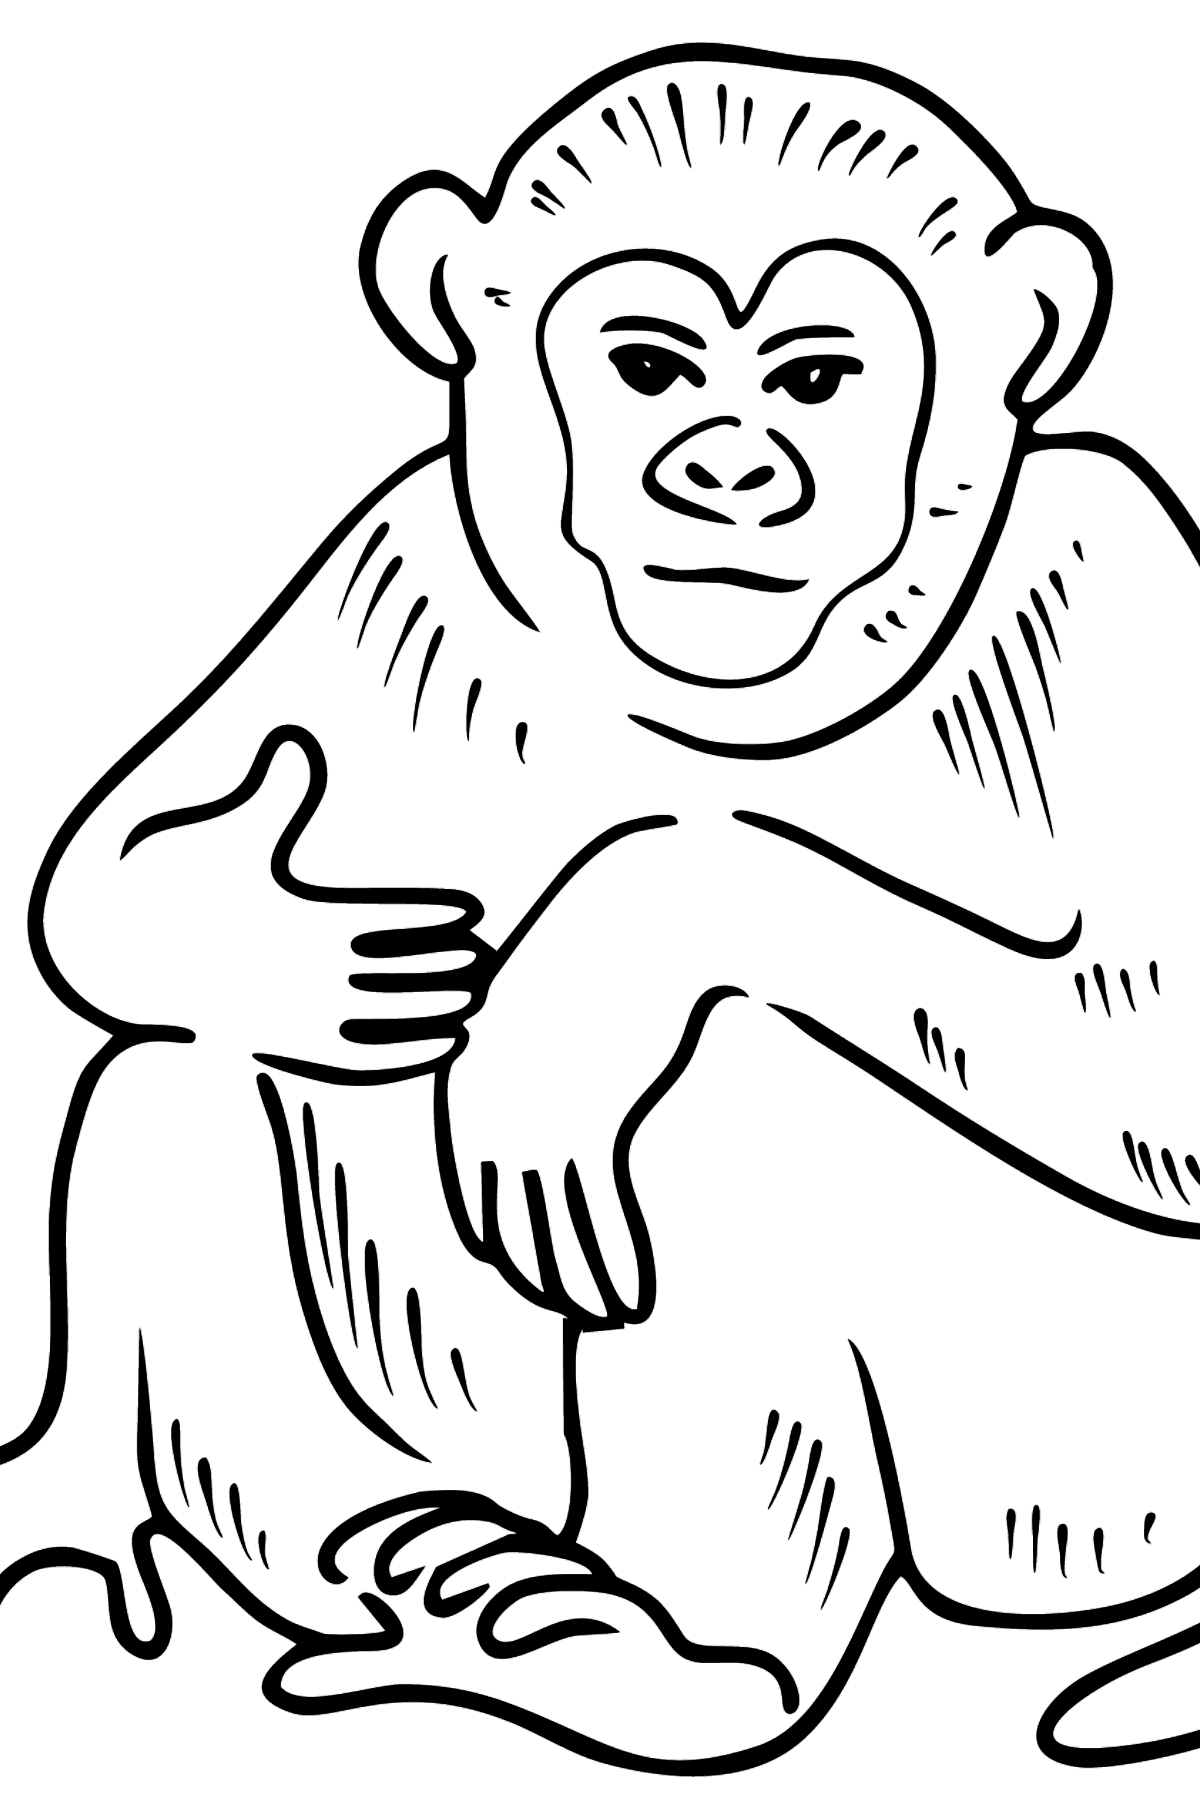 Desenho para colorir de macaco - Imagens para Colorir para Crianças